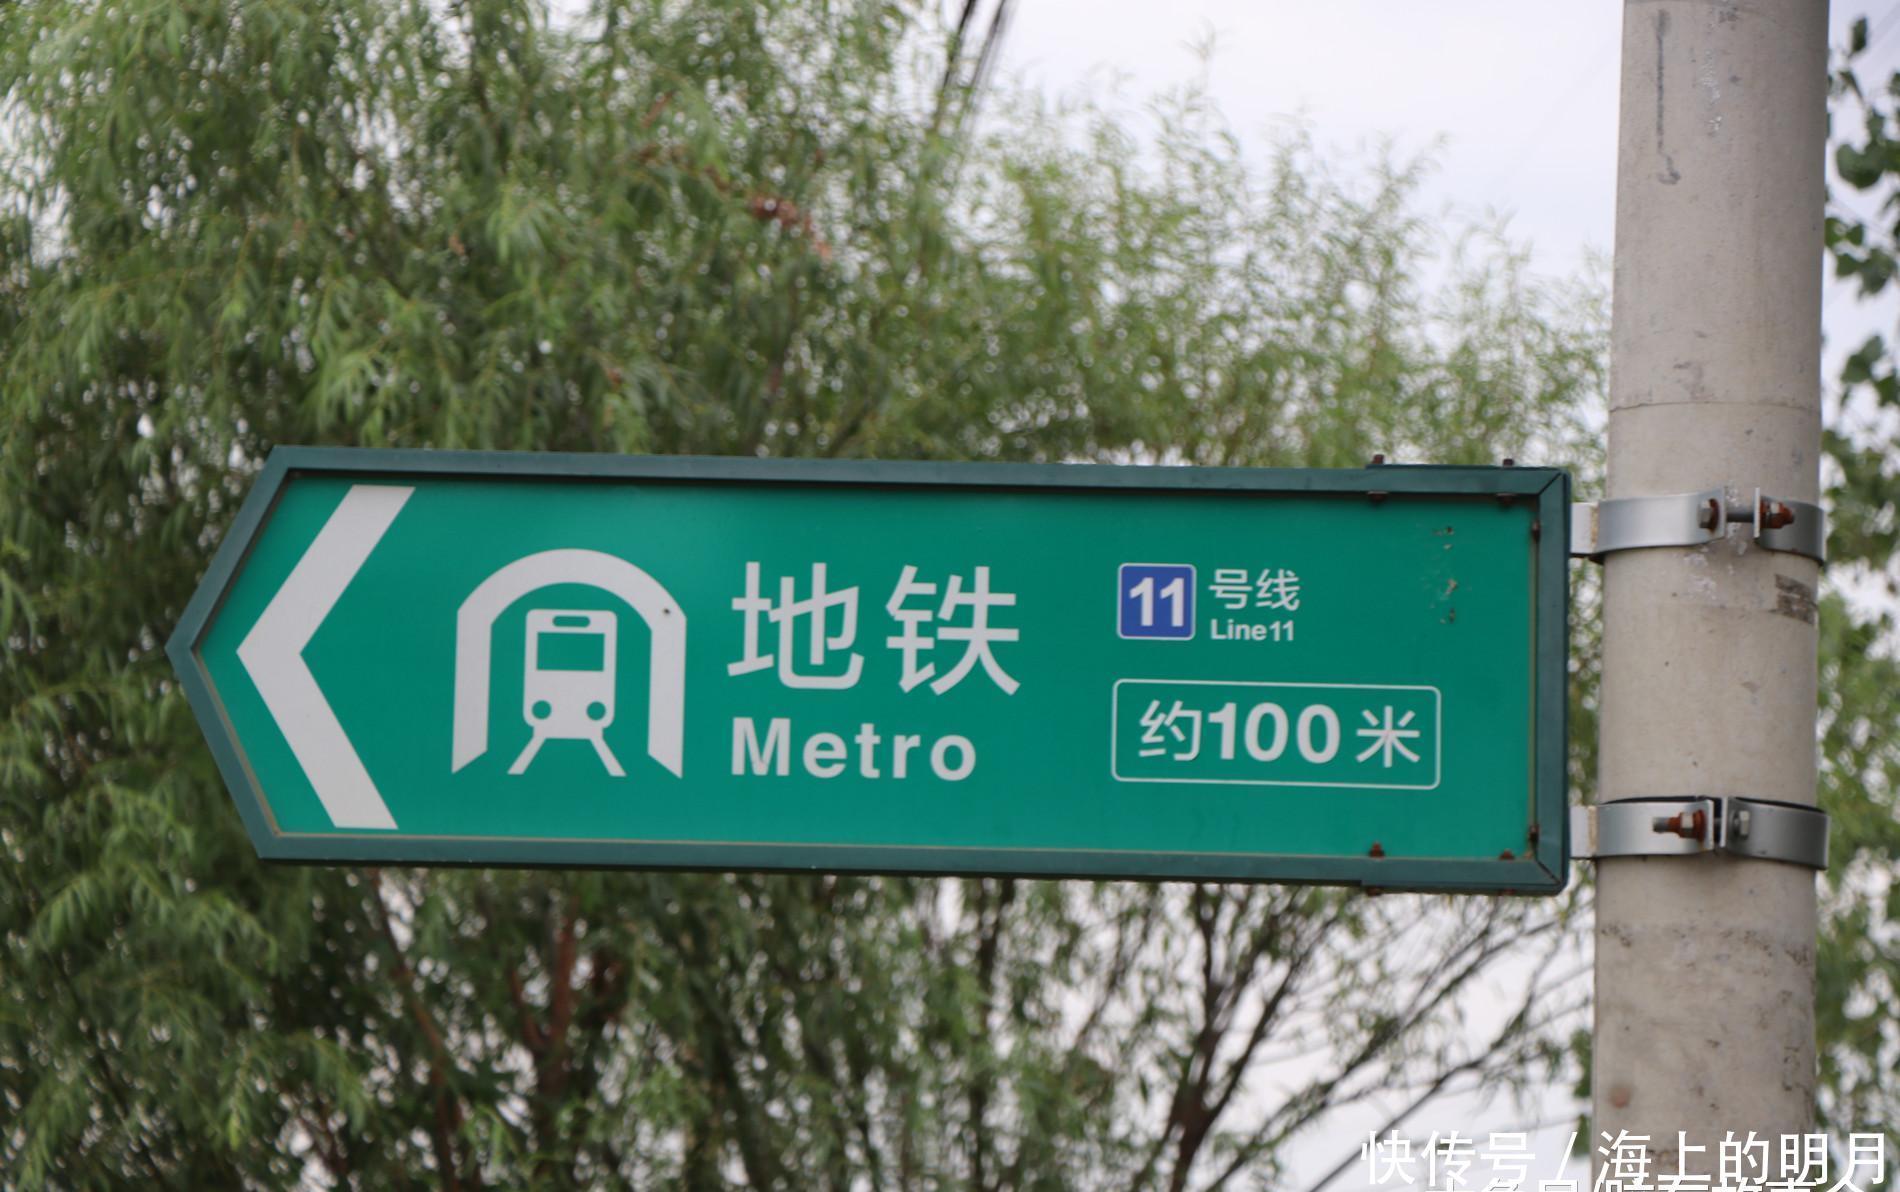 组图:青岛地铁11号线最东端的村庄,即墨东杻河